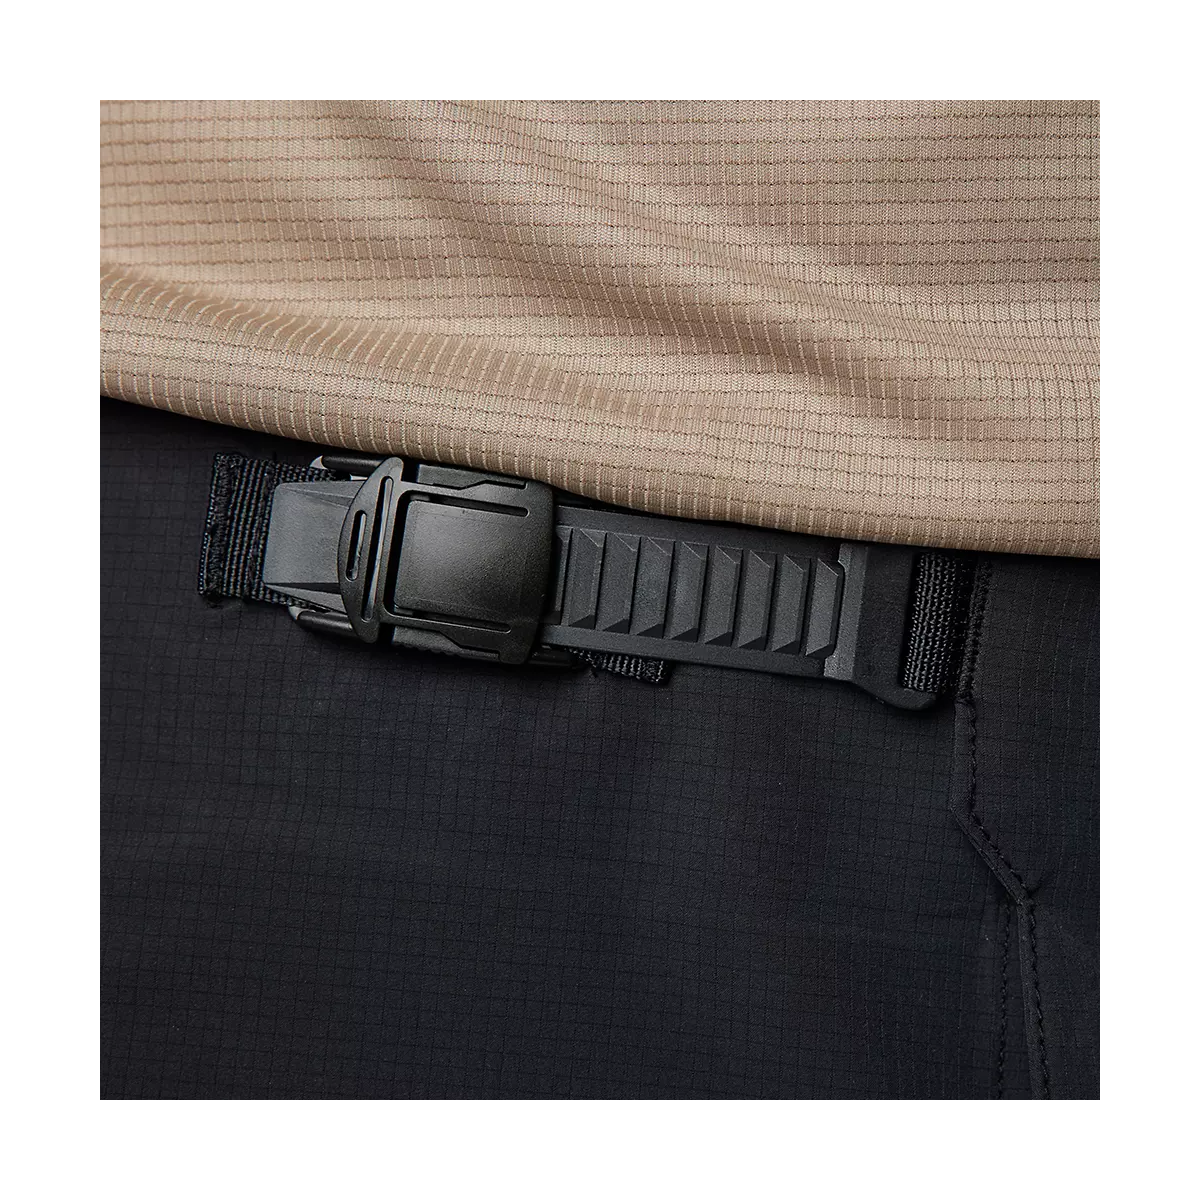 cierre de hebilla de Pantalón corto Fox Flexair Ascent en color negro con badana extraible de tallaje estrecho 30652-001